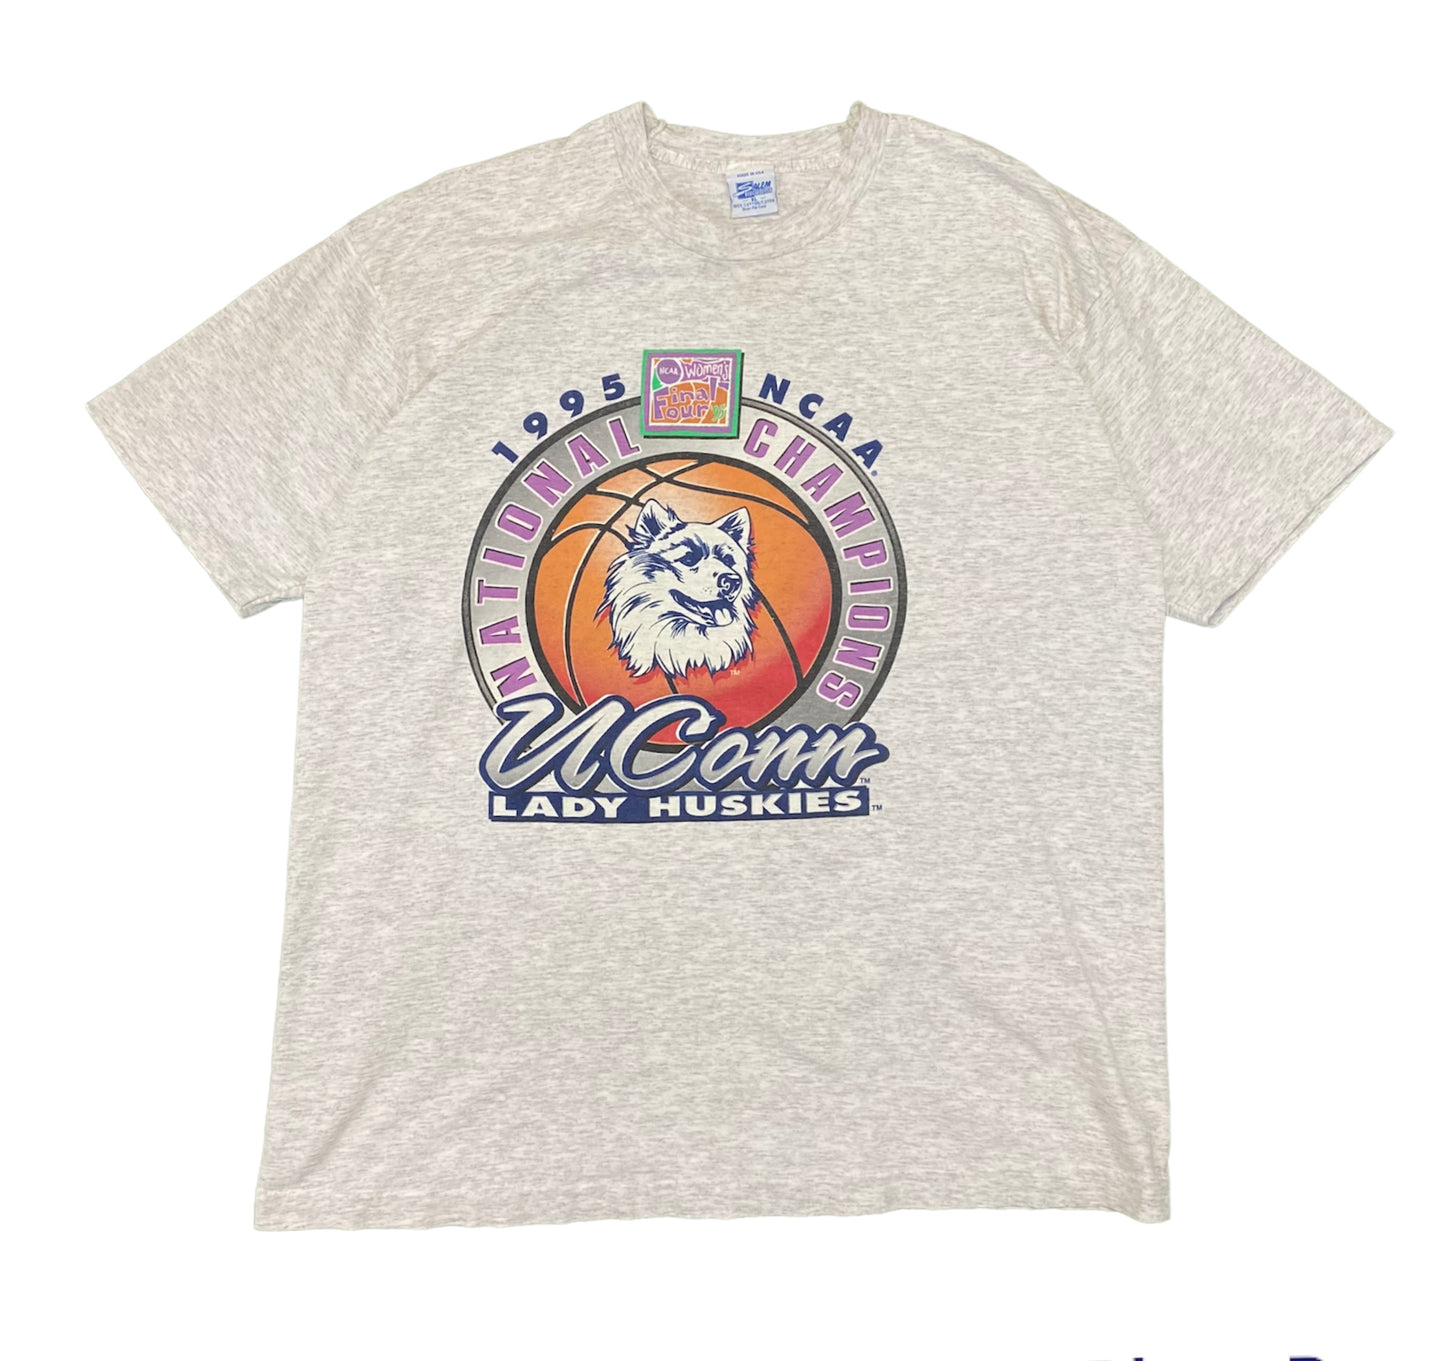 1995 National Champs UConn Women’s Basketball T-Shirt